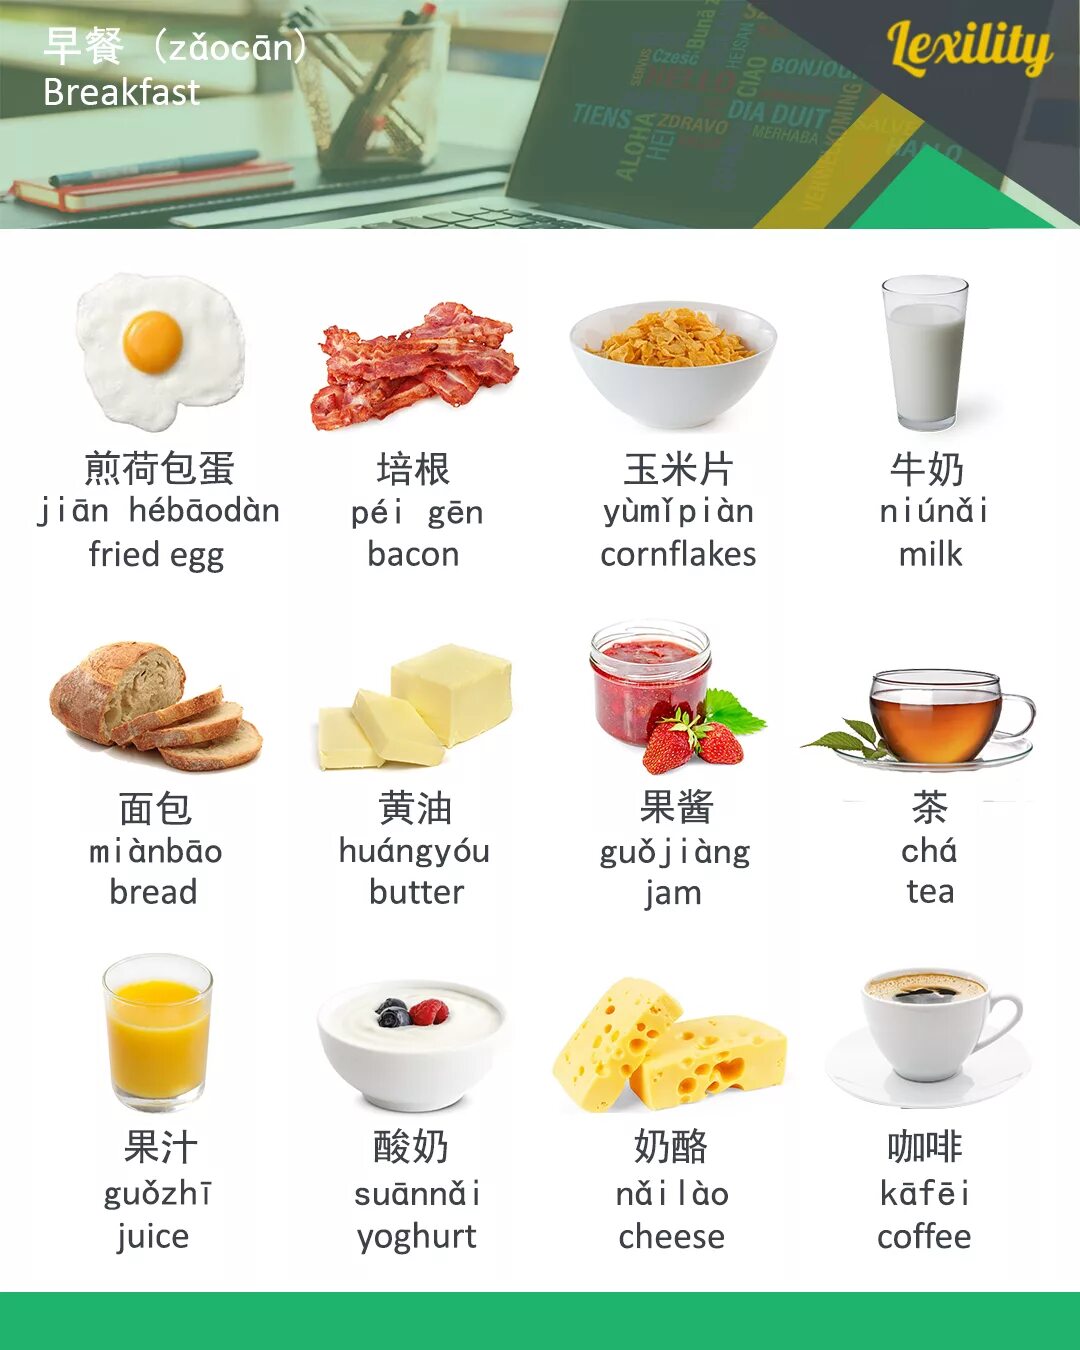 Переведи завтрак на английский. Завтрак по английскому языку. Продукты на завтрак на английском. Еда для завтрака на английском языке. Завтраки на английском языке с переводом.